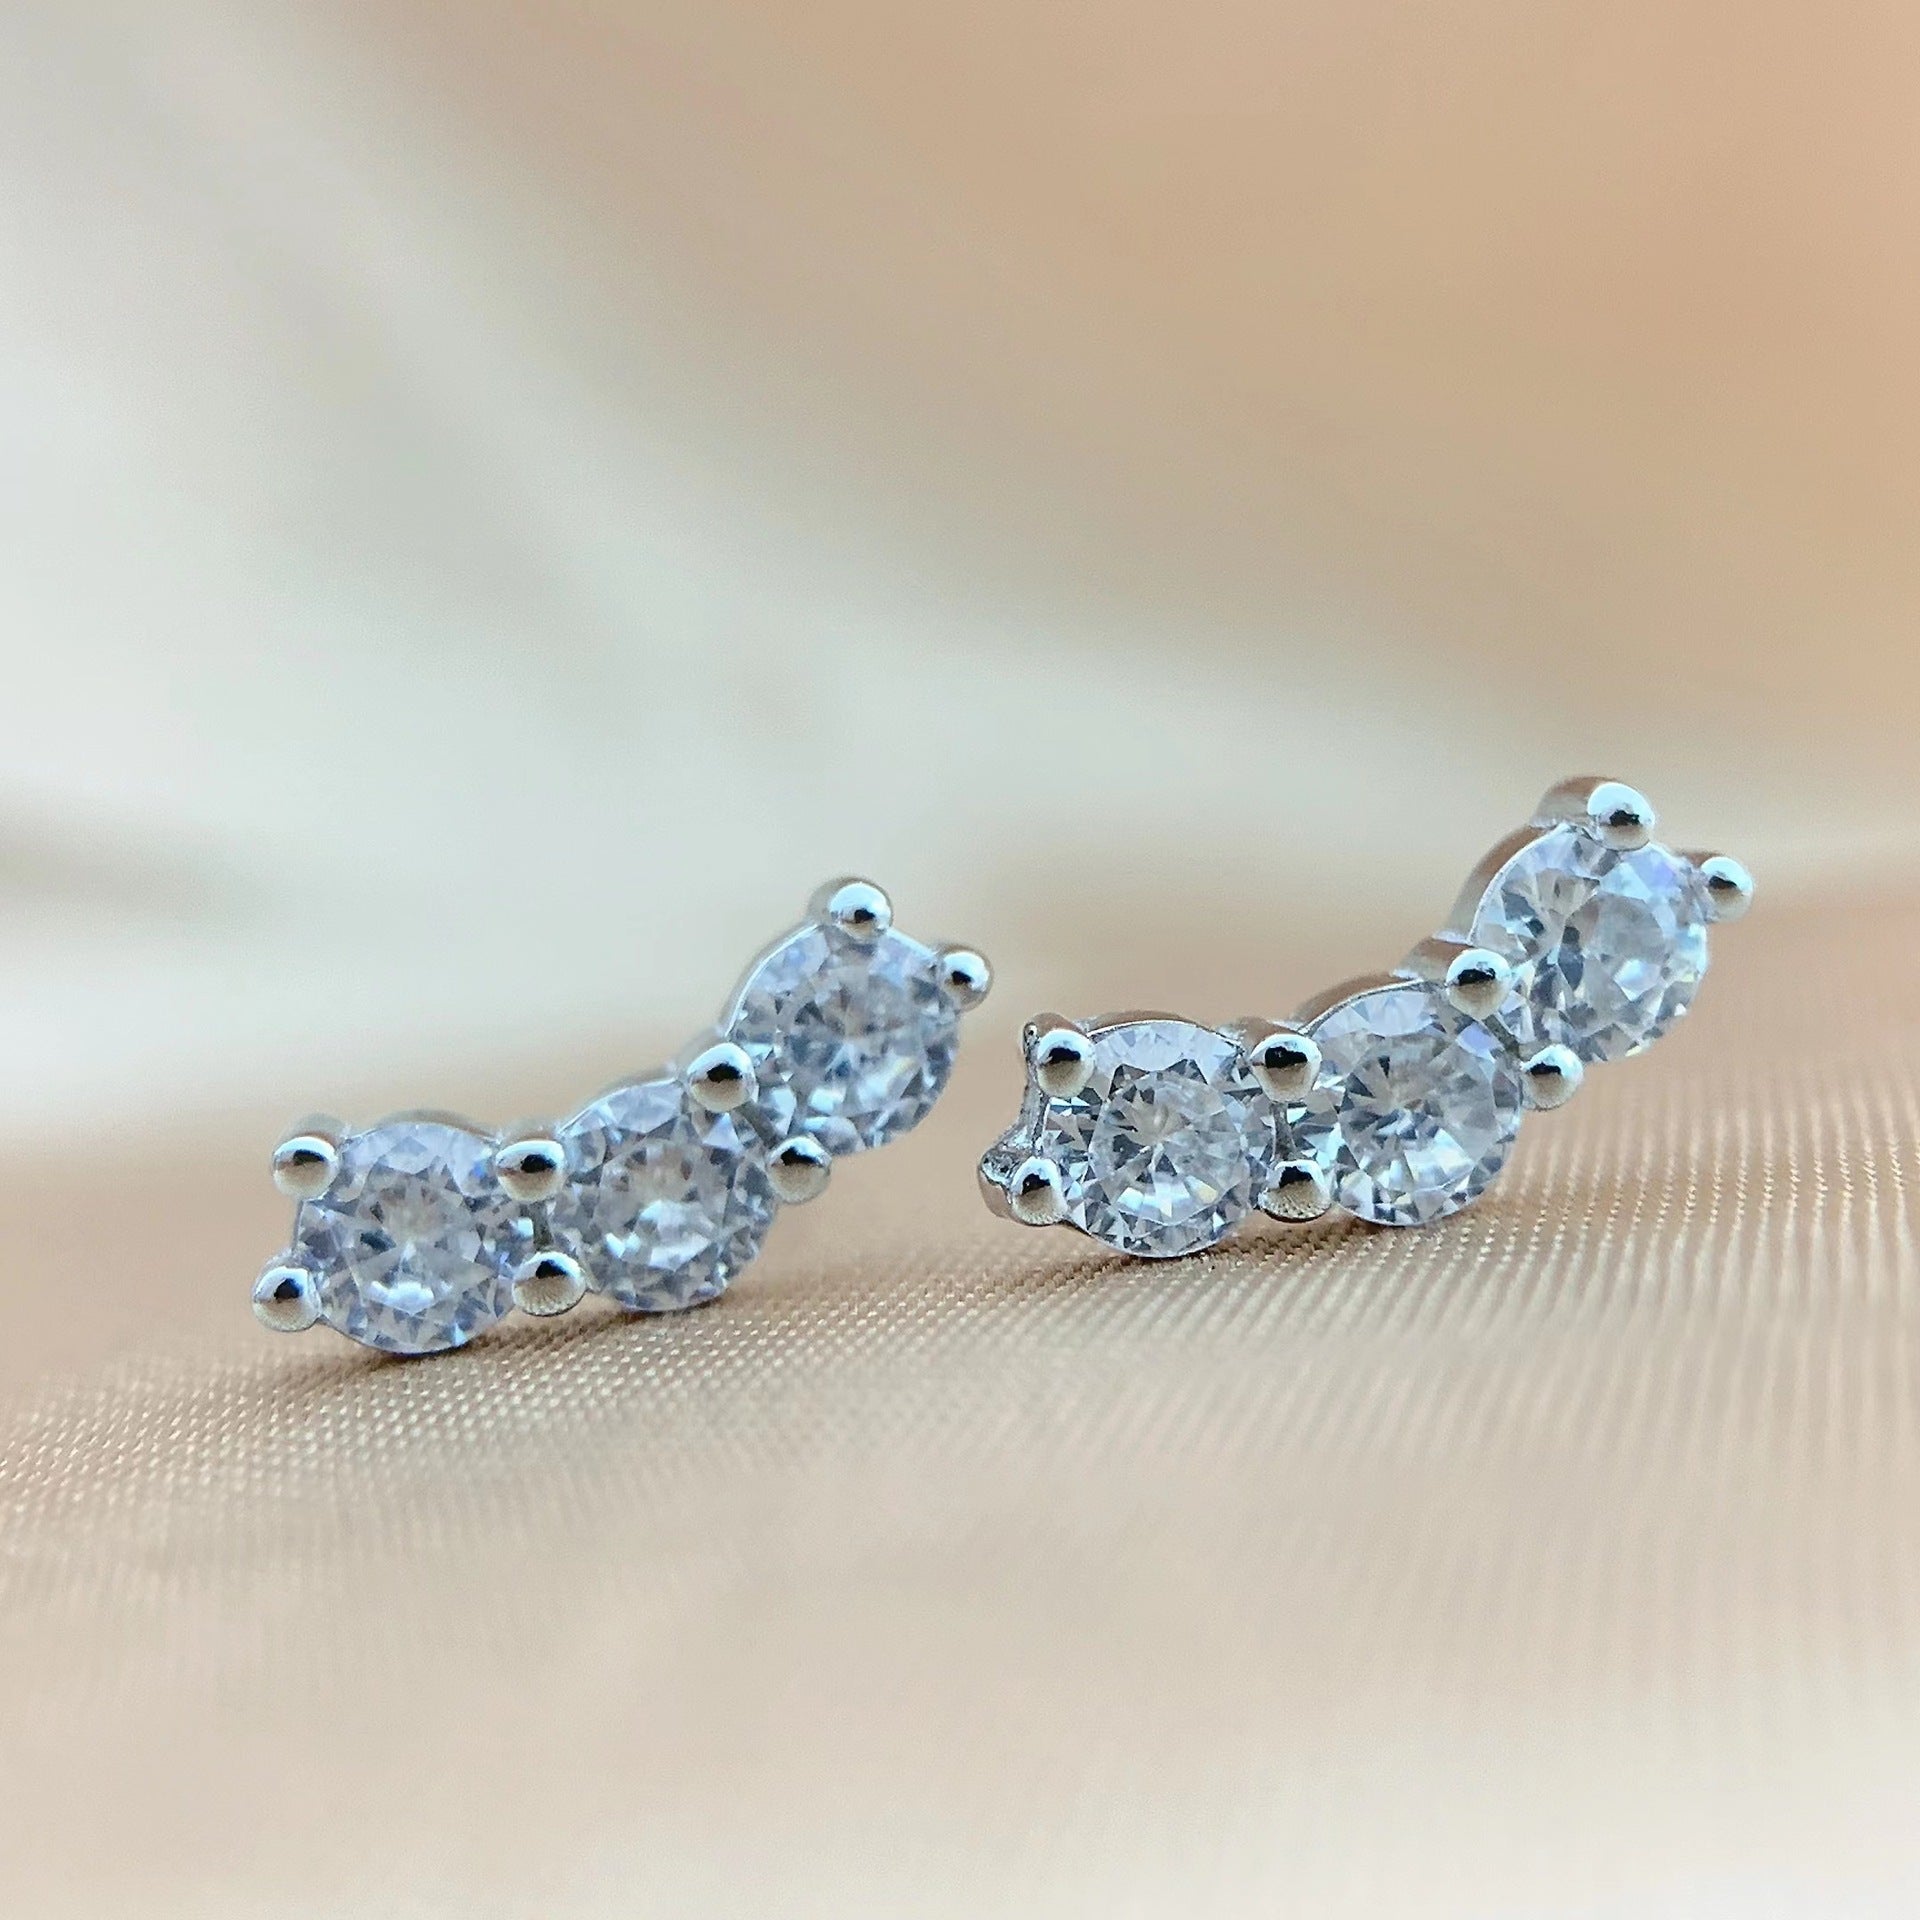 【#250】925 Sterling Silver Moissanite Earrings